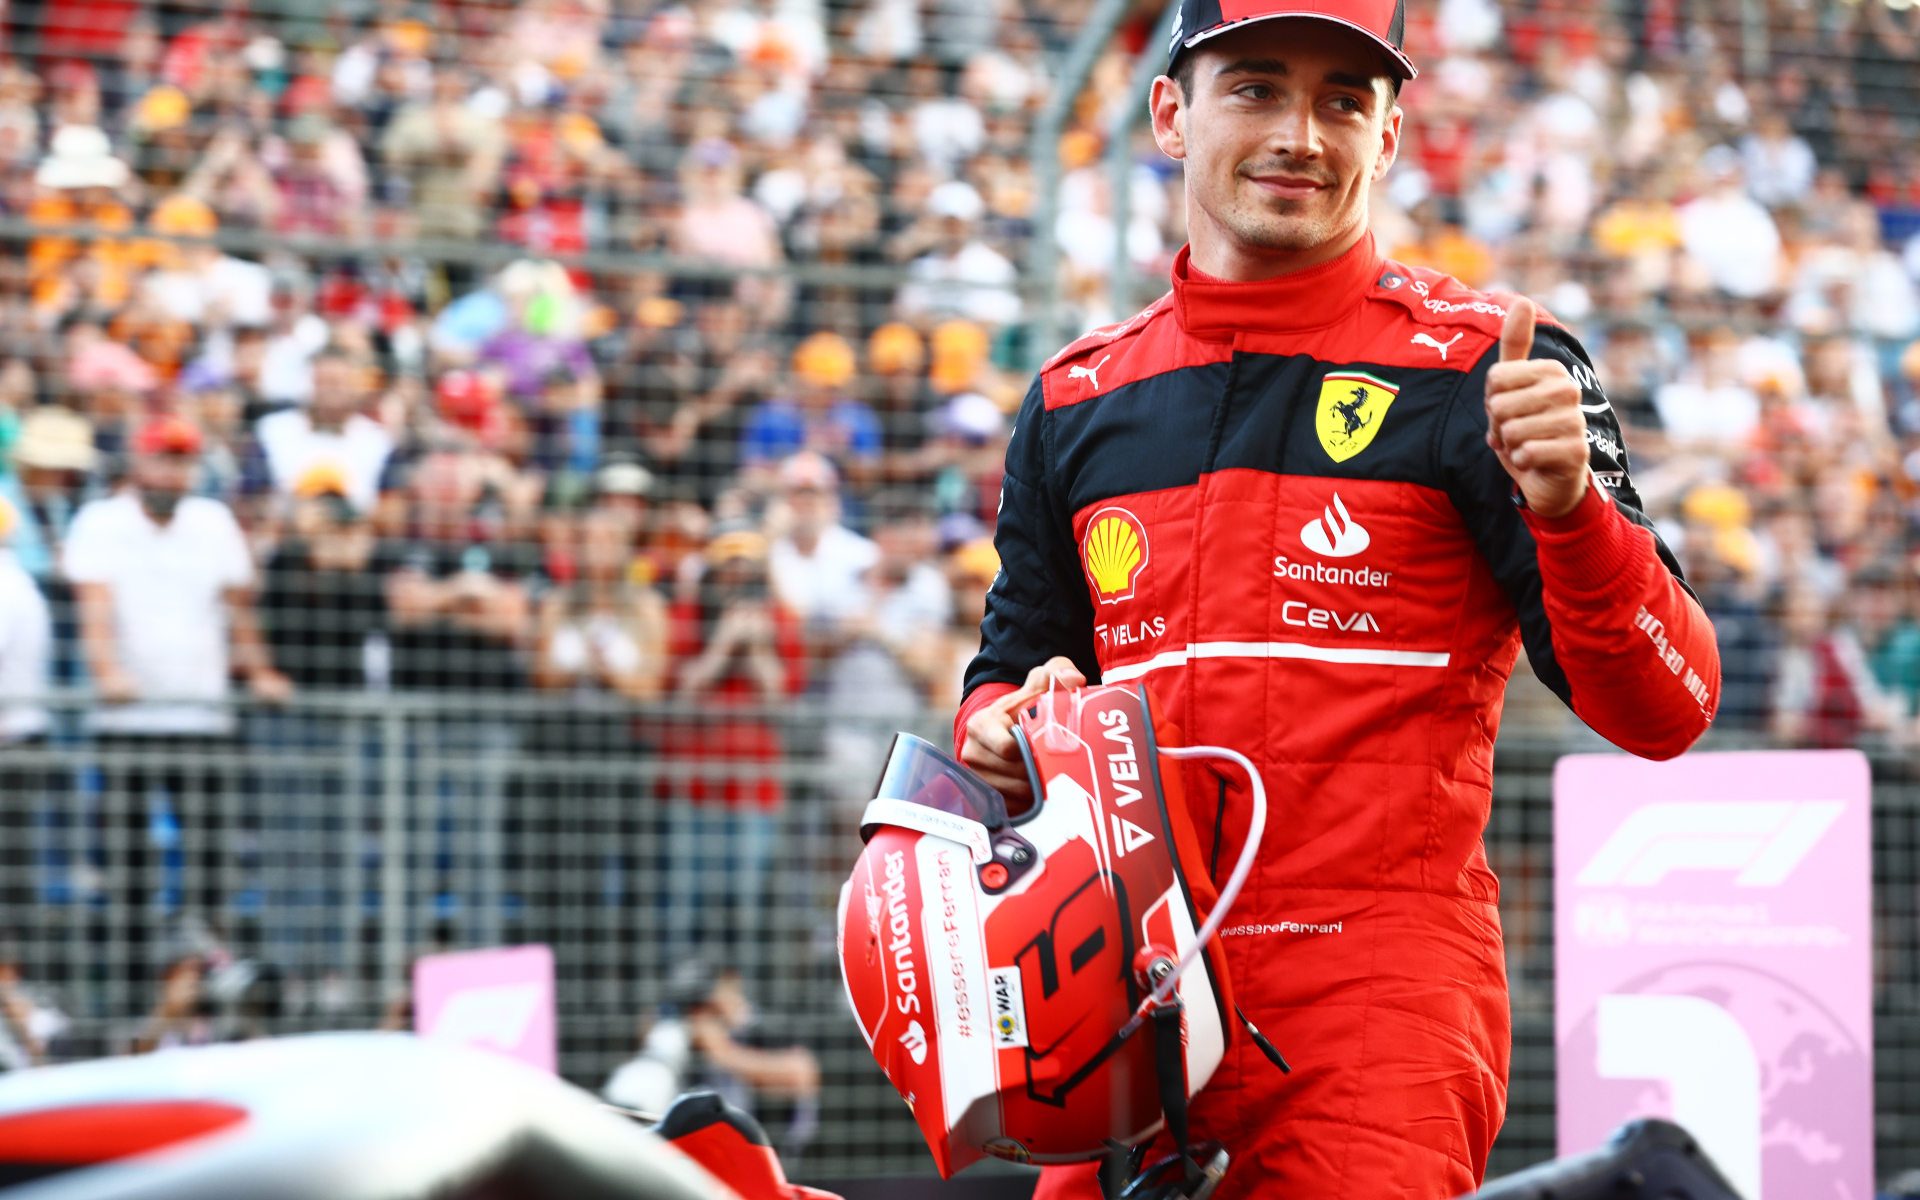 Пилот Ferrari Леклер выиграл Гран-при Австралии «Формулы-1»